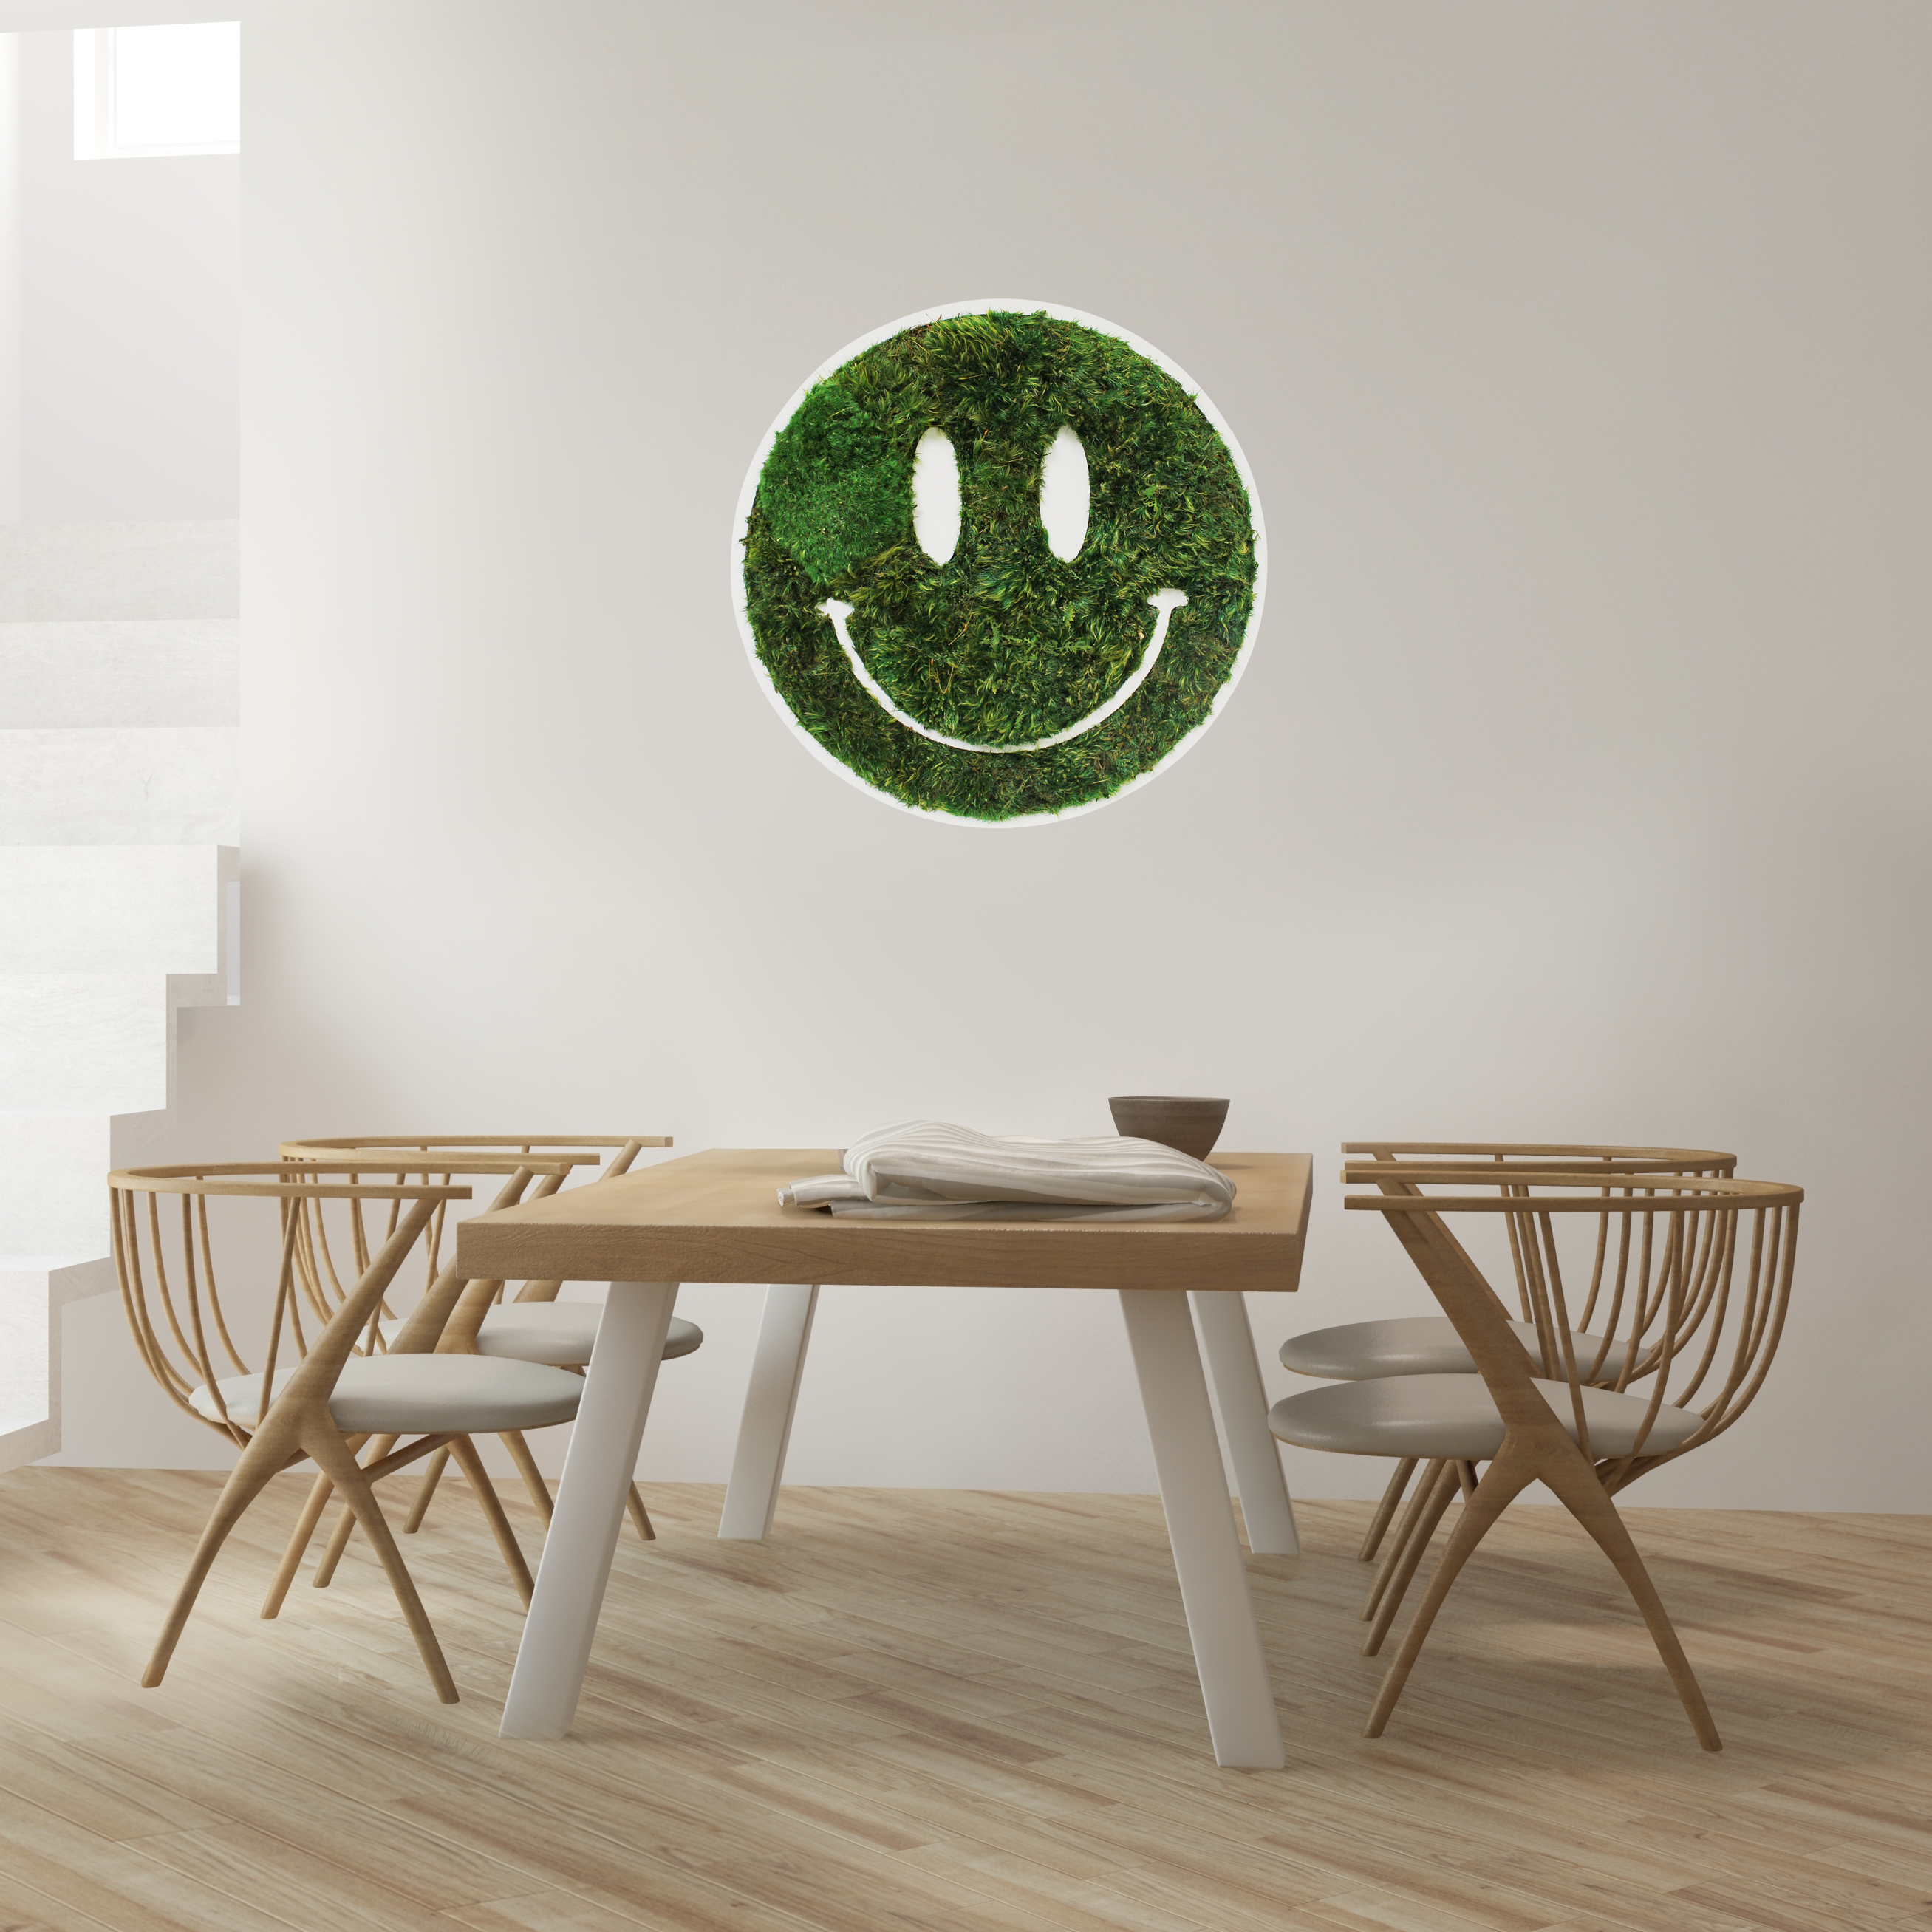 Smiley Face - Moss Wall Decor